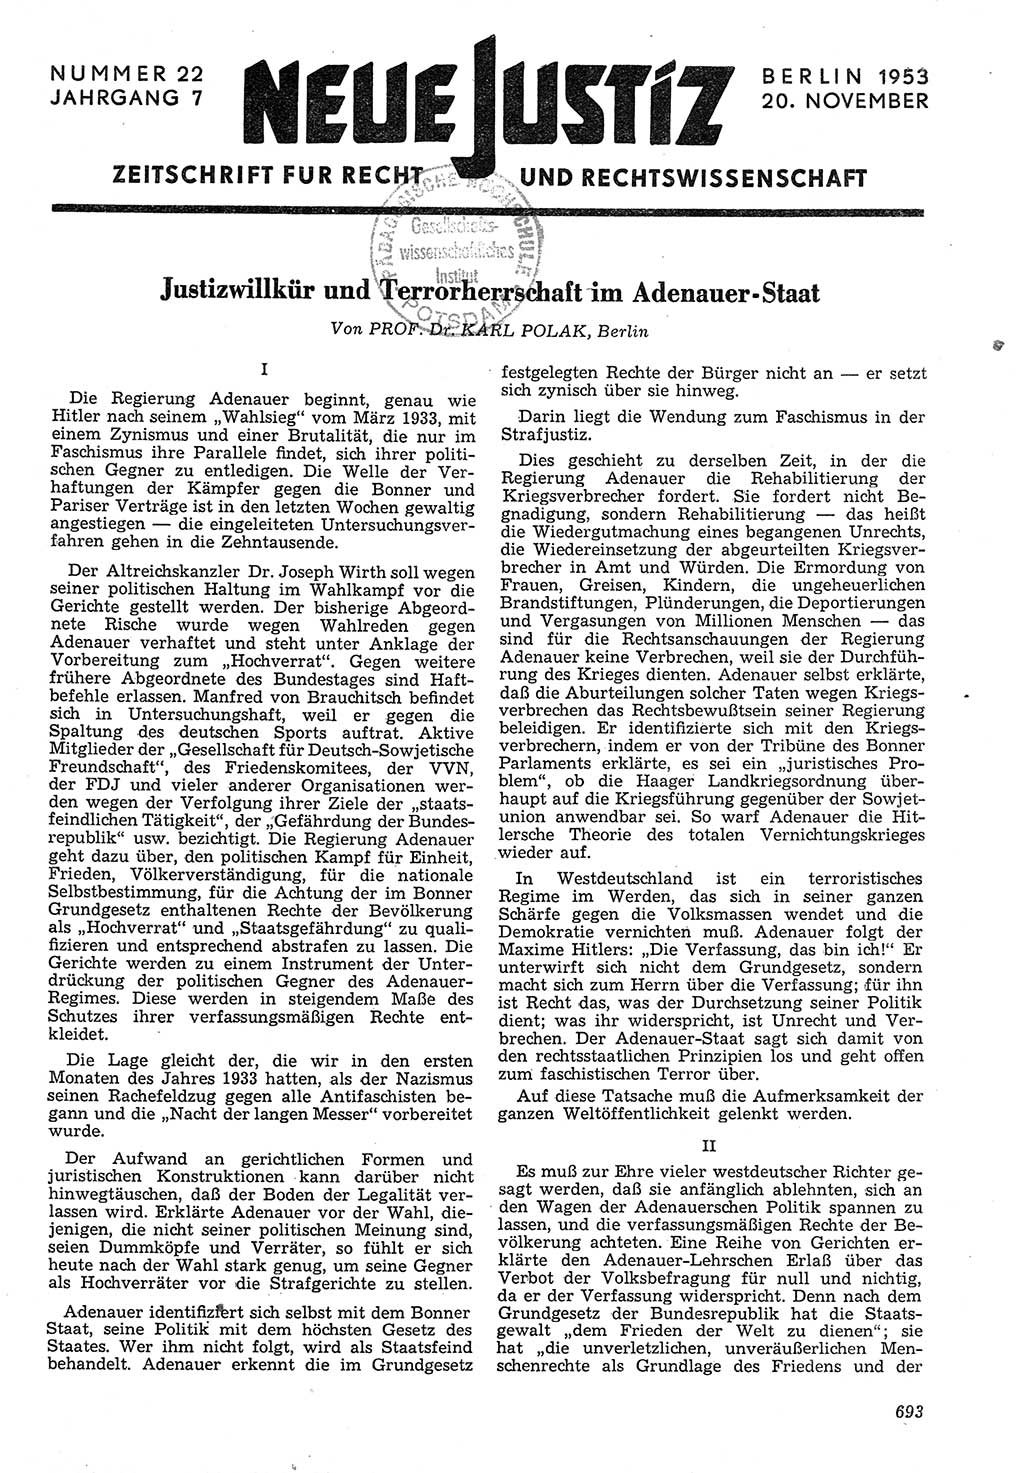 Neue Justiz (NJ), Zeitschrift für Recht und Rechtswissenschaft [Deutsche Demokratische Republik (DDR)], 7. Jahrgang 1953, Seite 693 (NJ DDR 1953, S. 693)